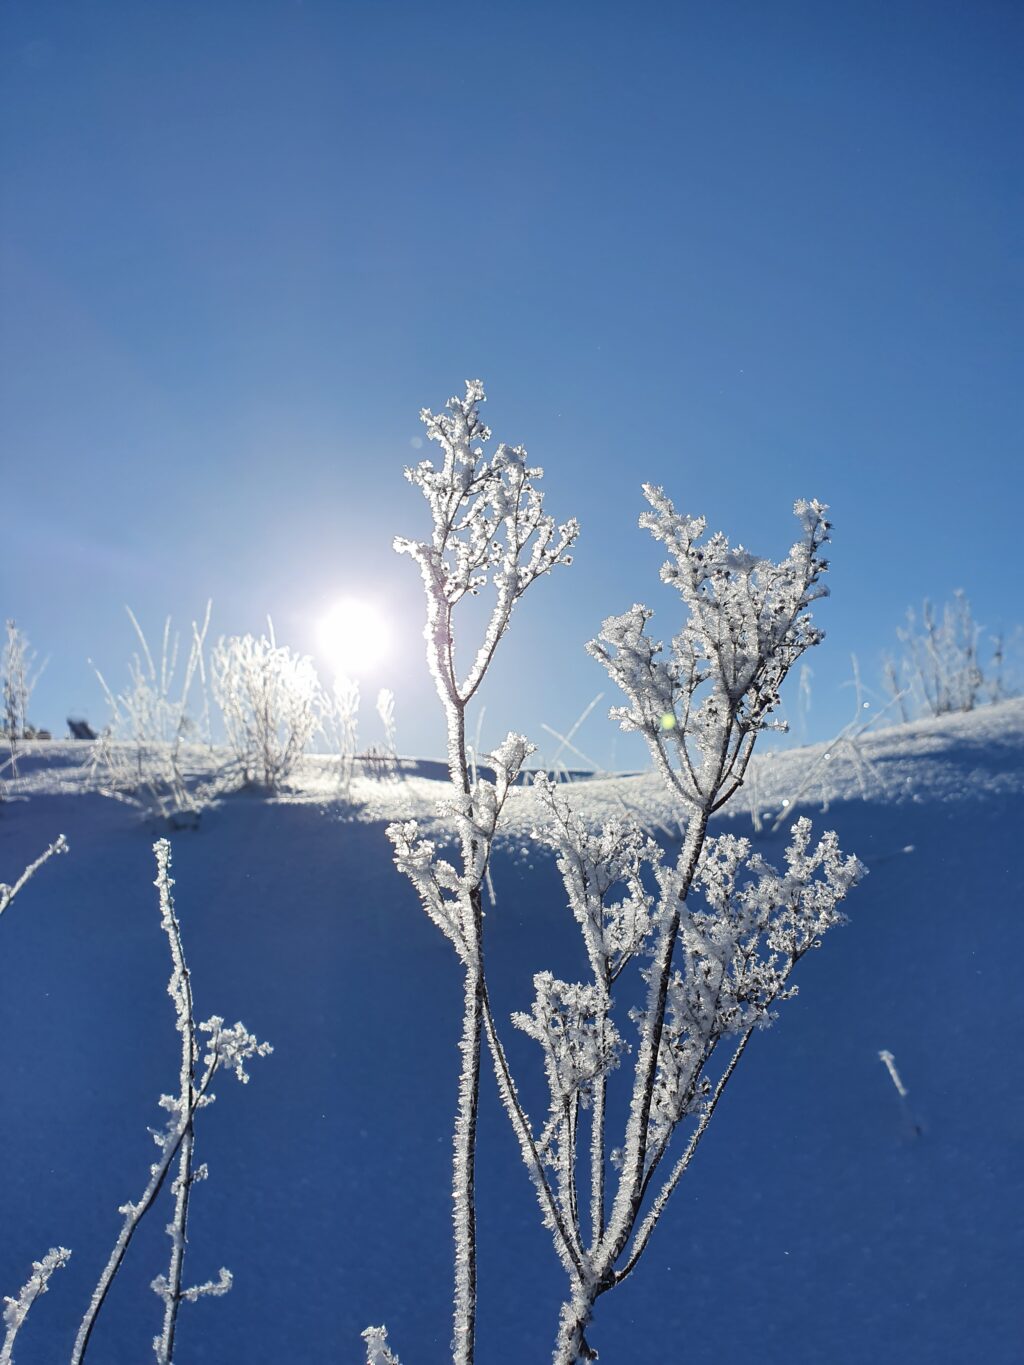 Talventörröttäjän takana loistaa aurinko ja luminen mäki kimaltelee.